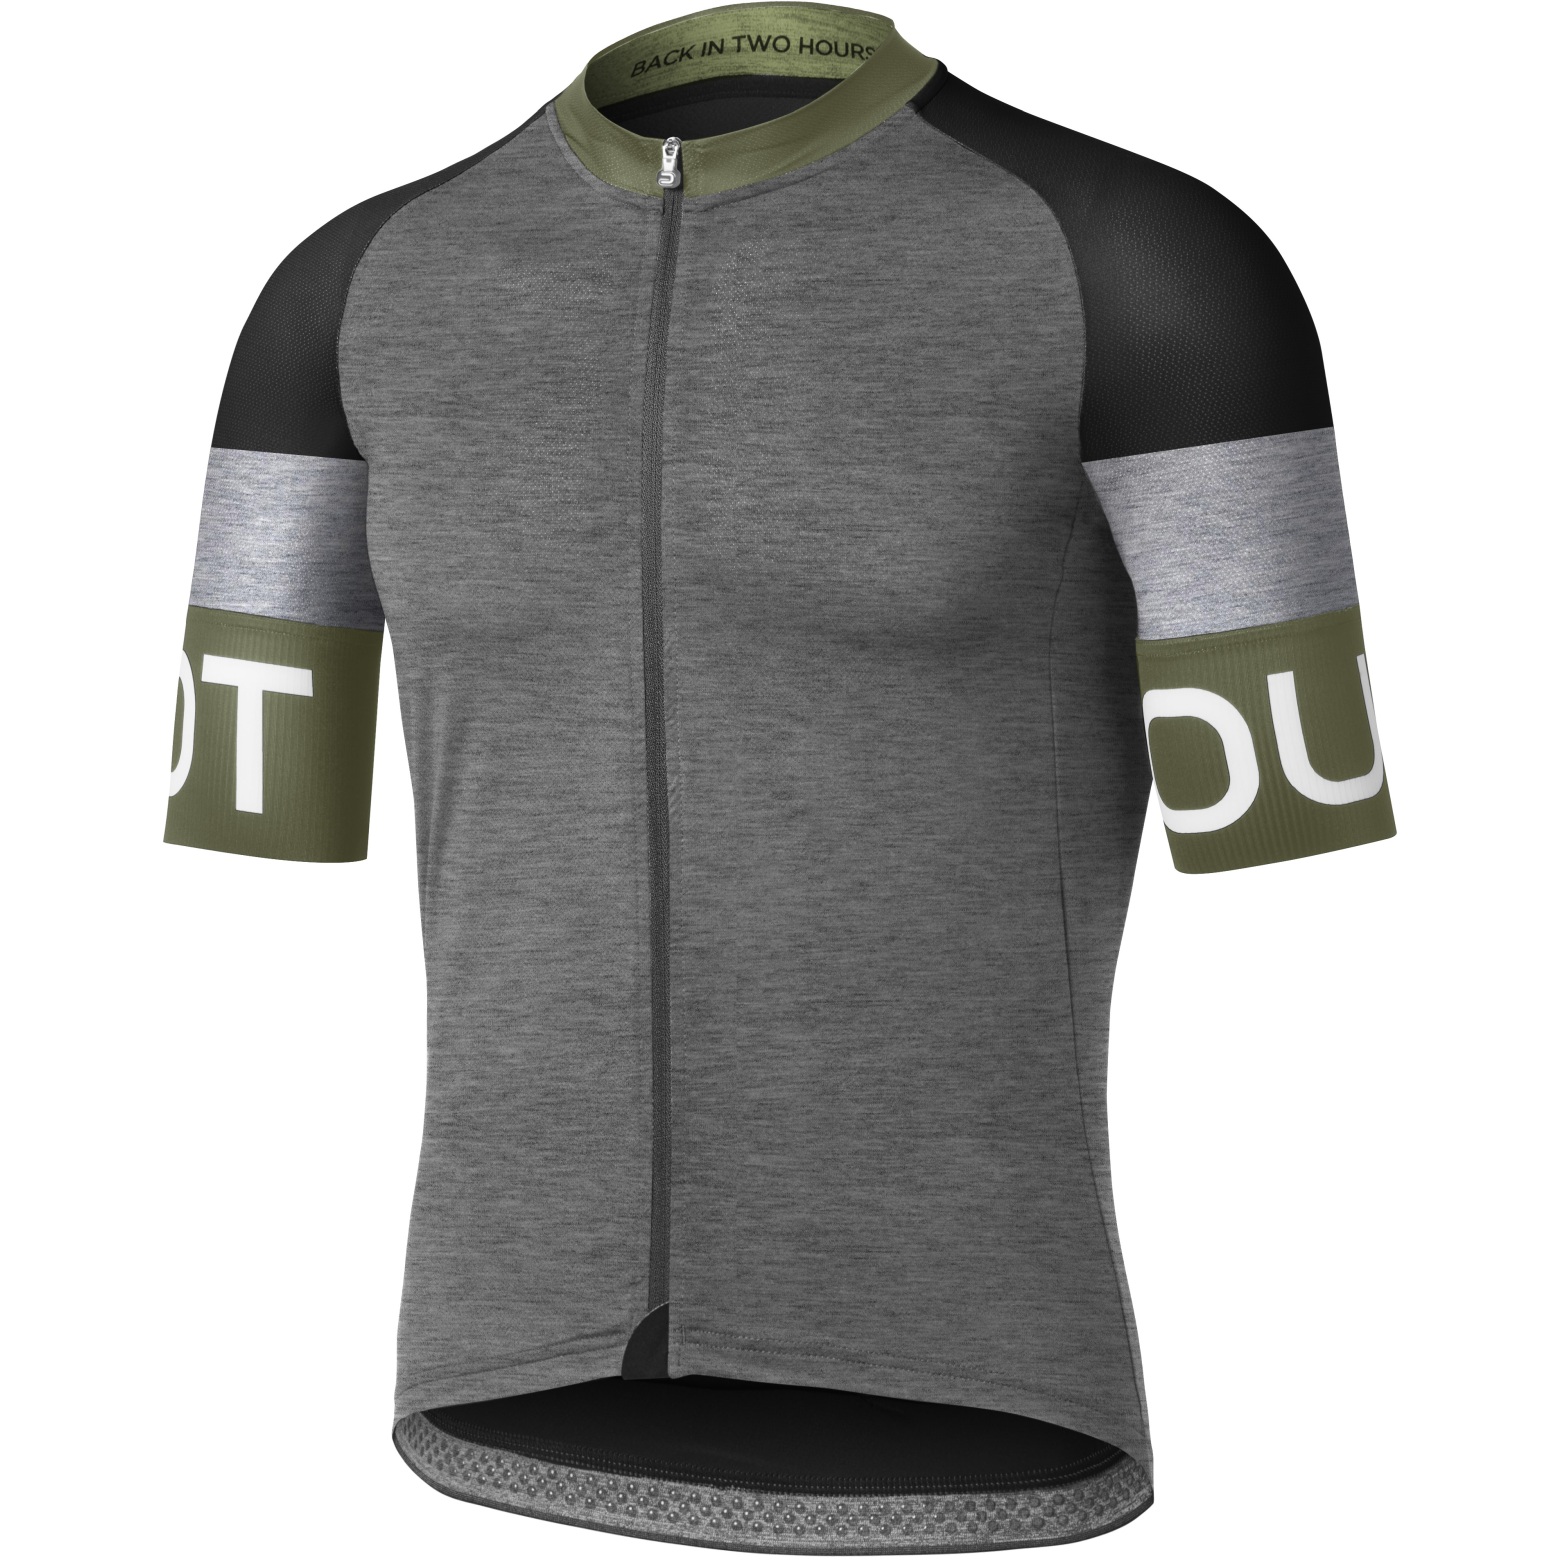 Productfoto van Dotout Spin Fietsshirt Heren - melange dark grey/groen